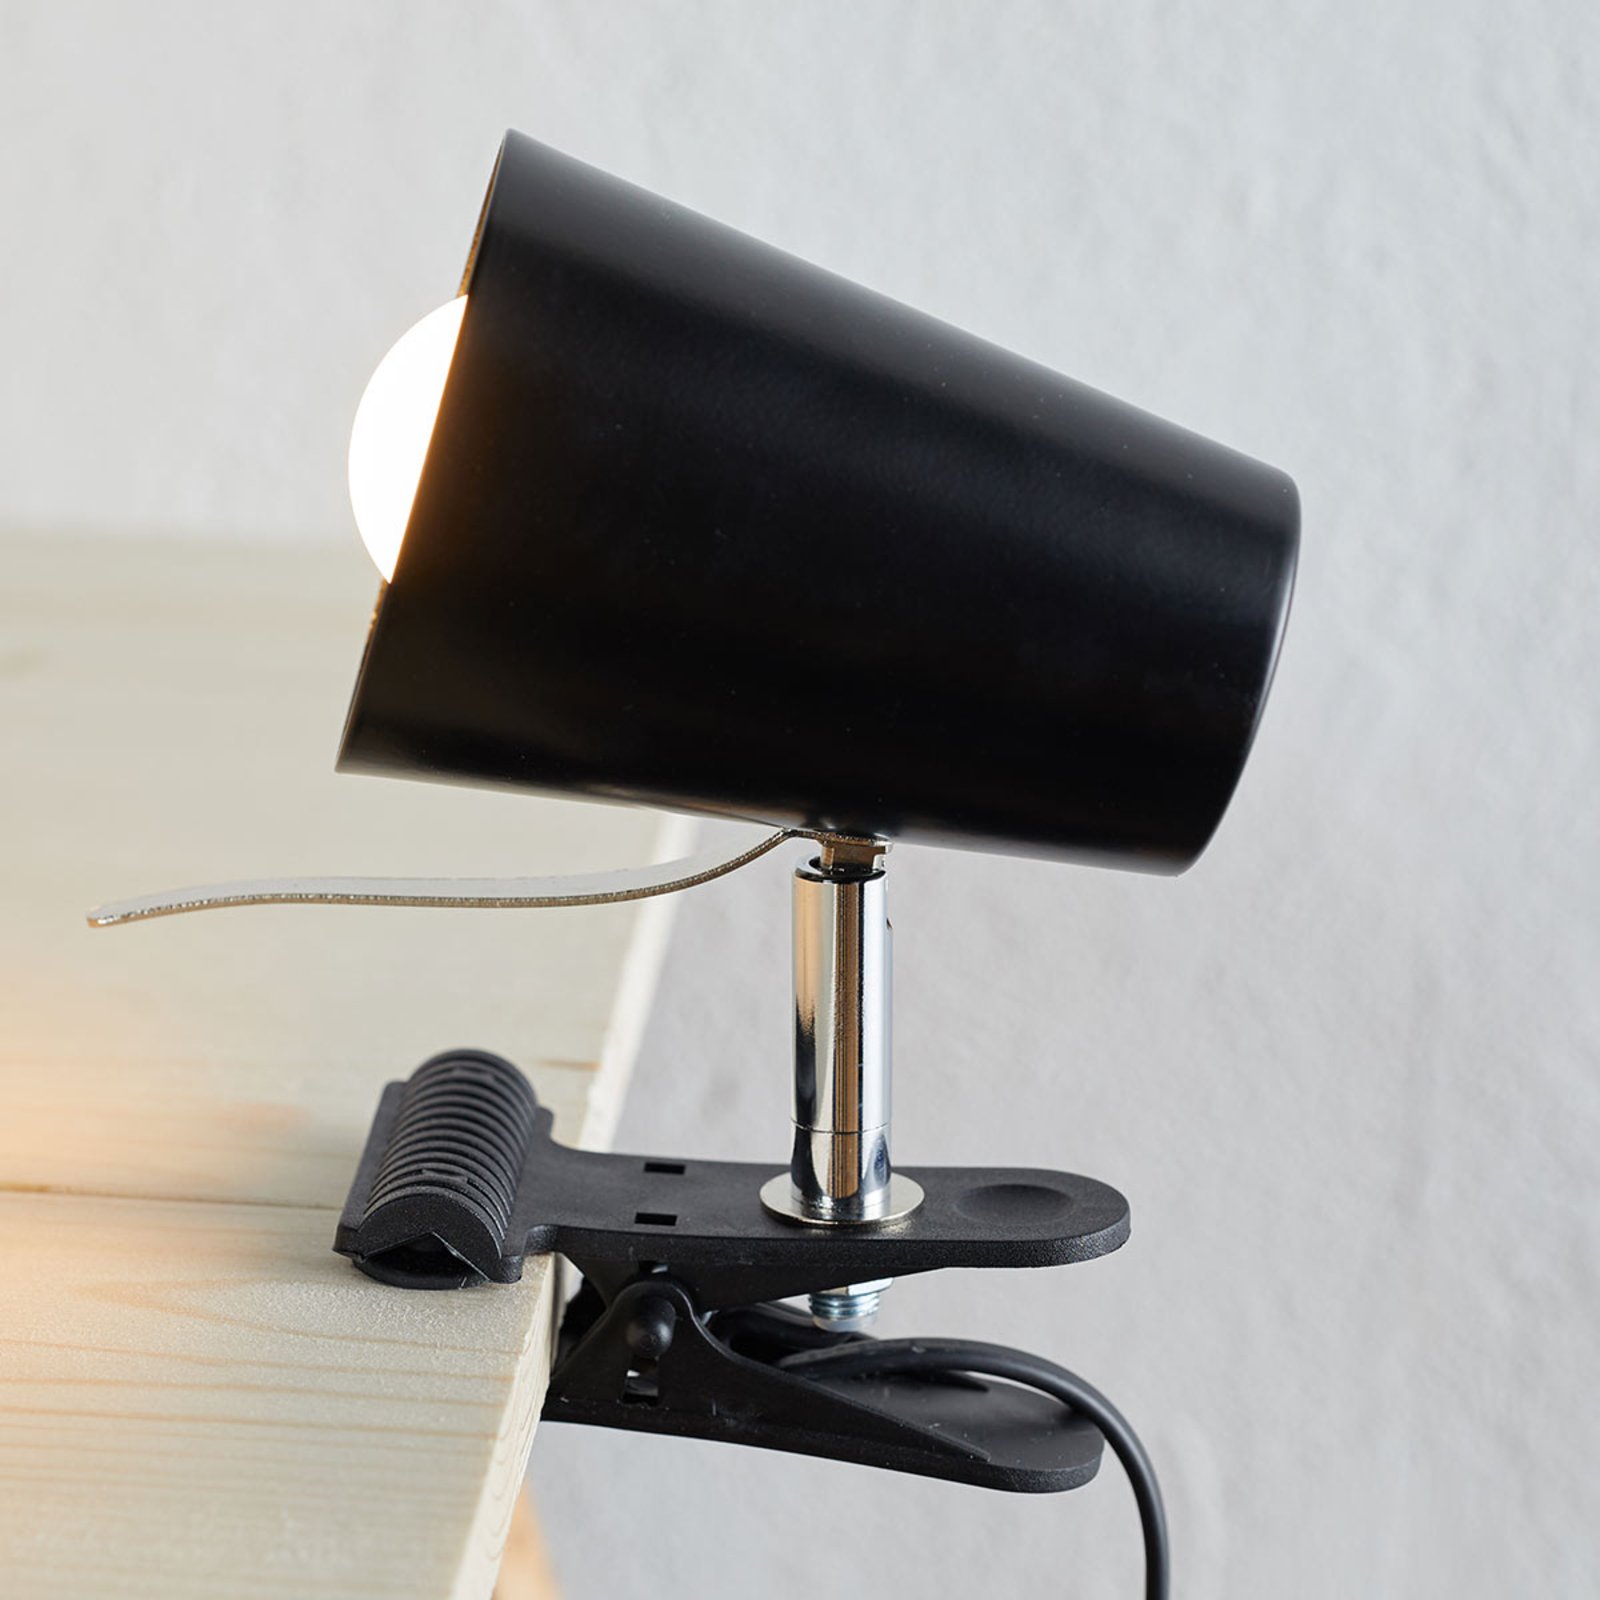 Lampă neagră cu clemă Clampspots aspect modern